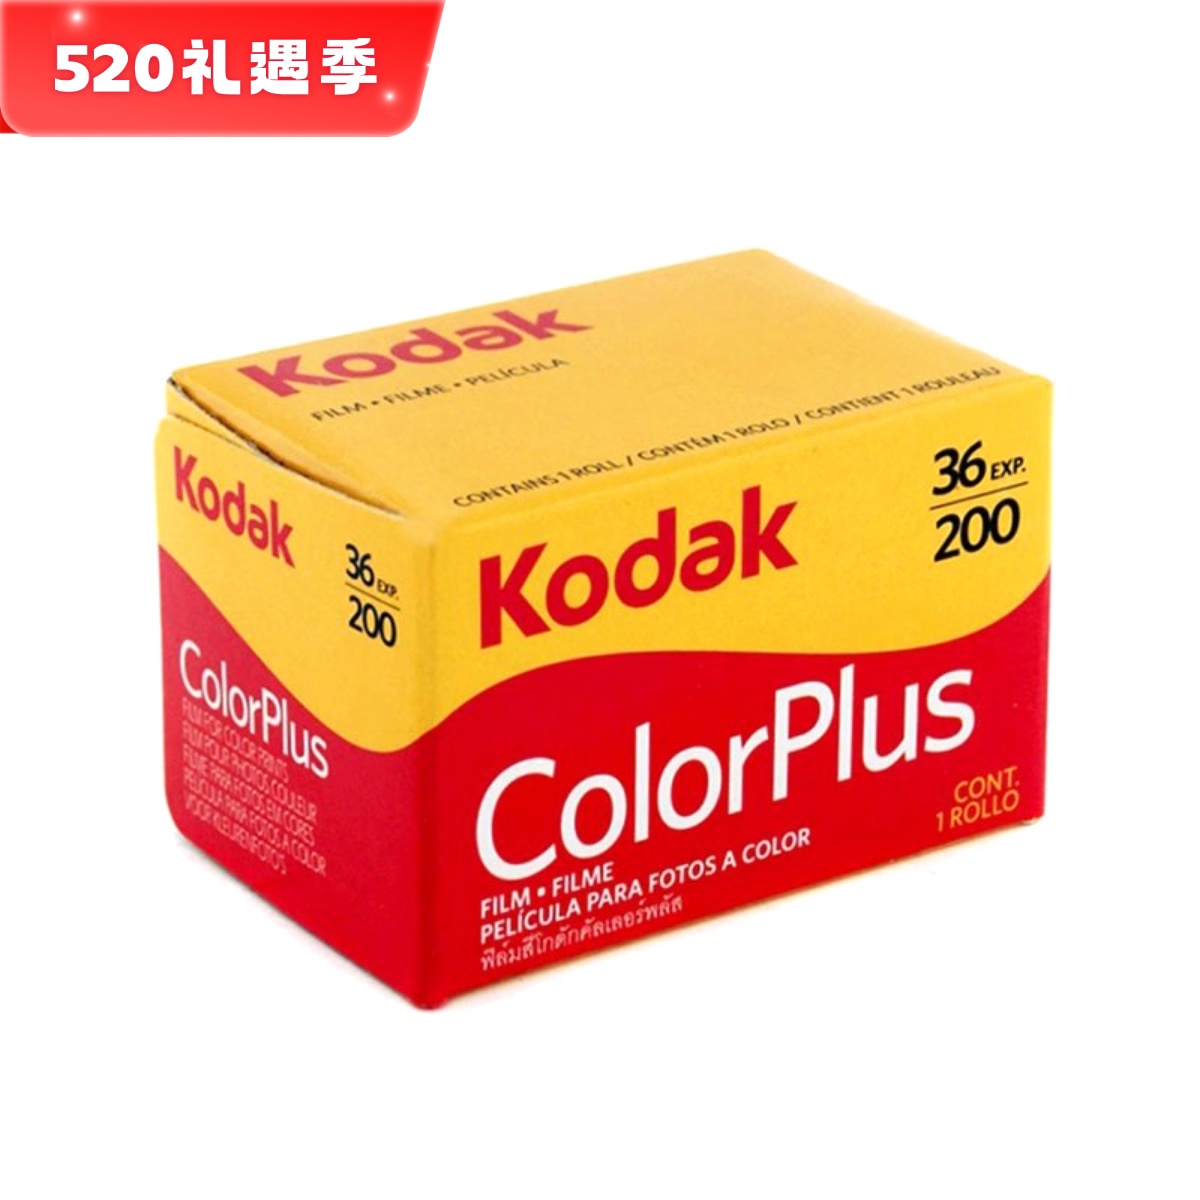 美国原装柯达135彩色负片胶卷 kodak易拍200 Color 25年08月现货